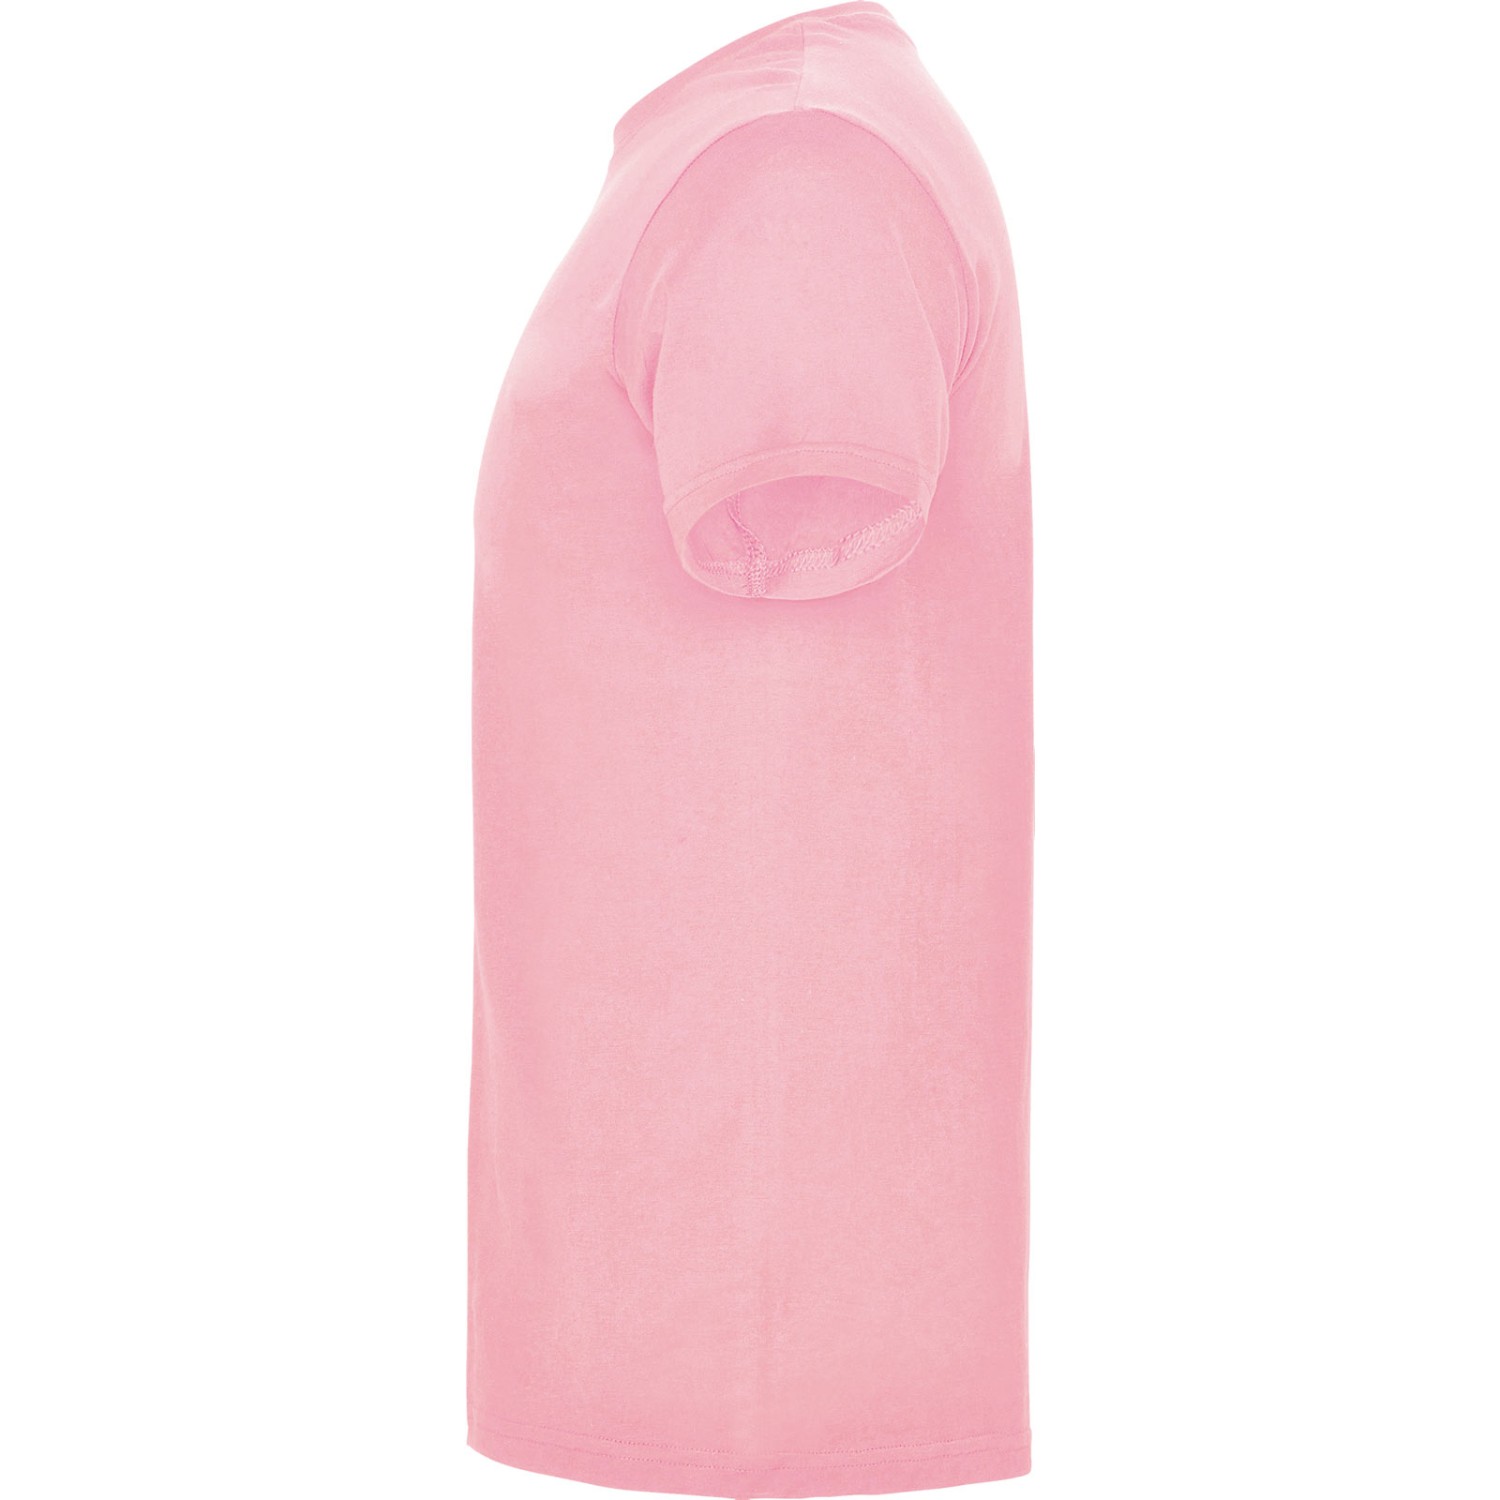 3. Foto T-Shirt BEAGLE Kurzarm Rundhals mit Druck (Farbe: light pink Größe: XL)